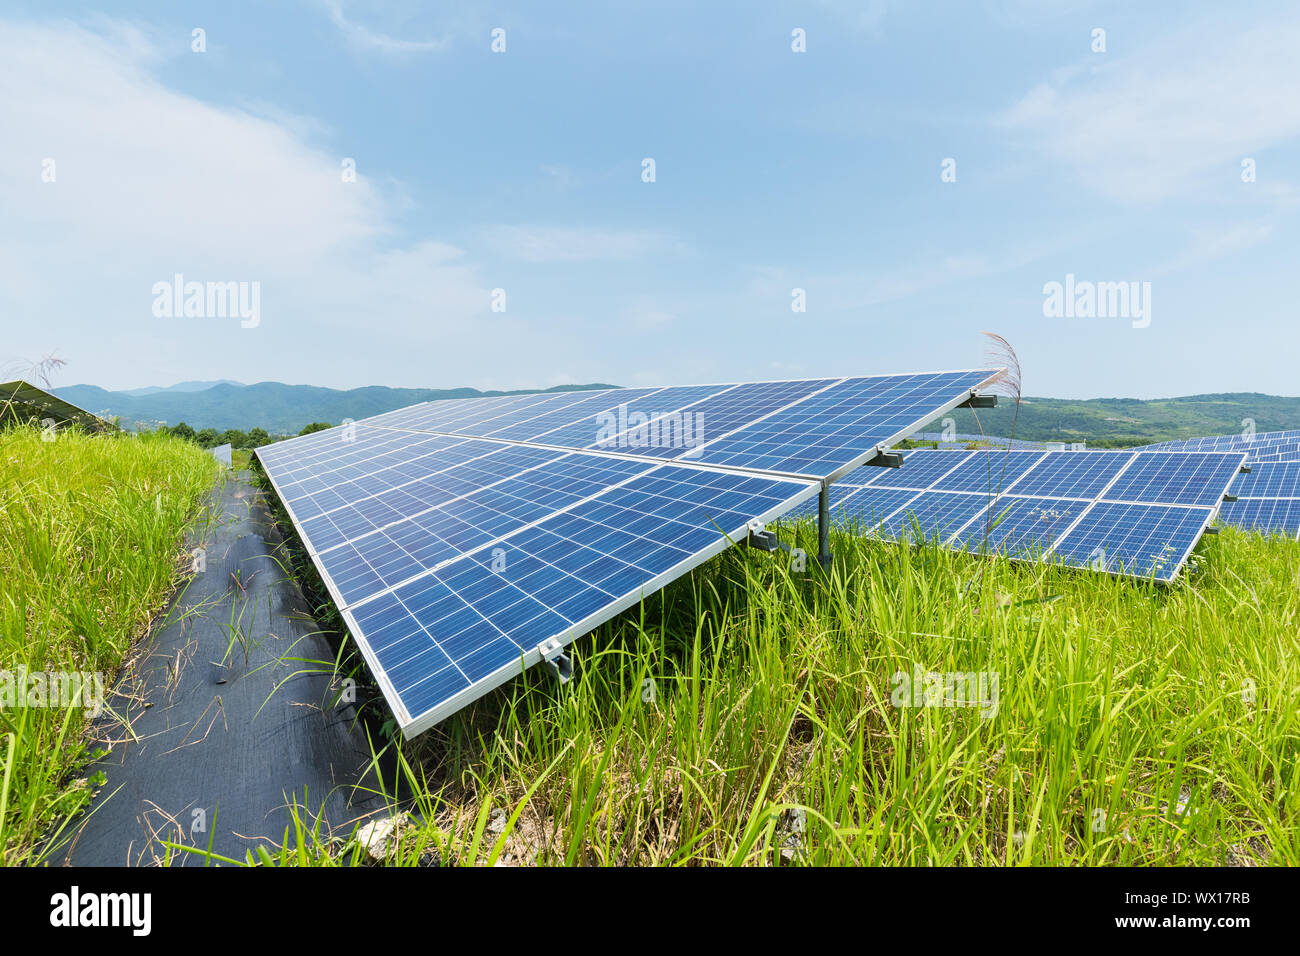 solar panels on hillside Stock Photo